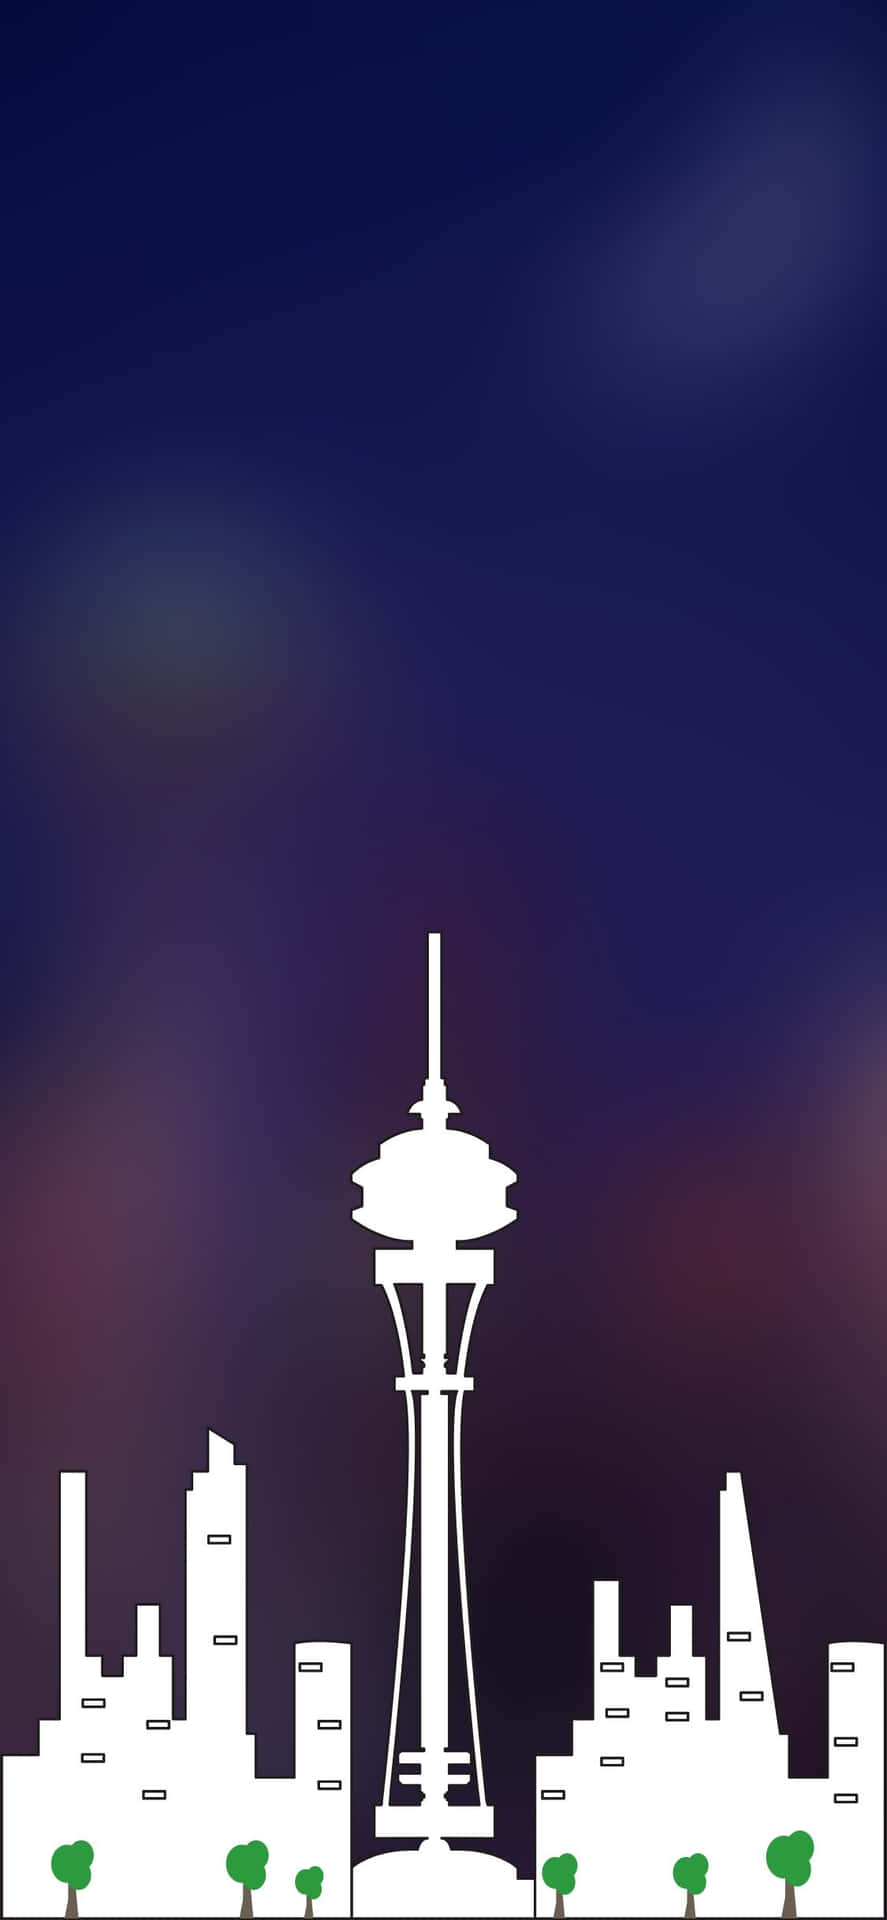 Adeslumbrante Linha Do Horizonte Da Cidade De Seattle Refletida No Vidro De Um Iphone X.